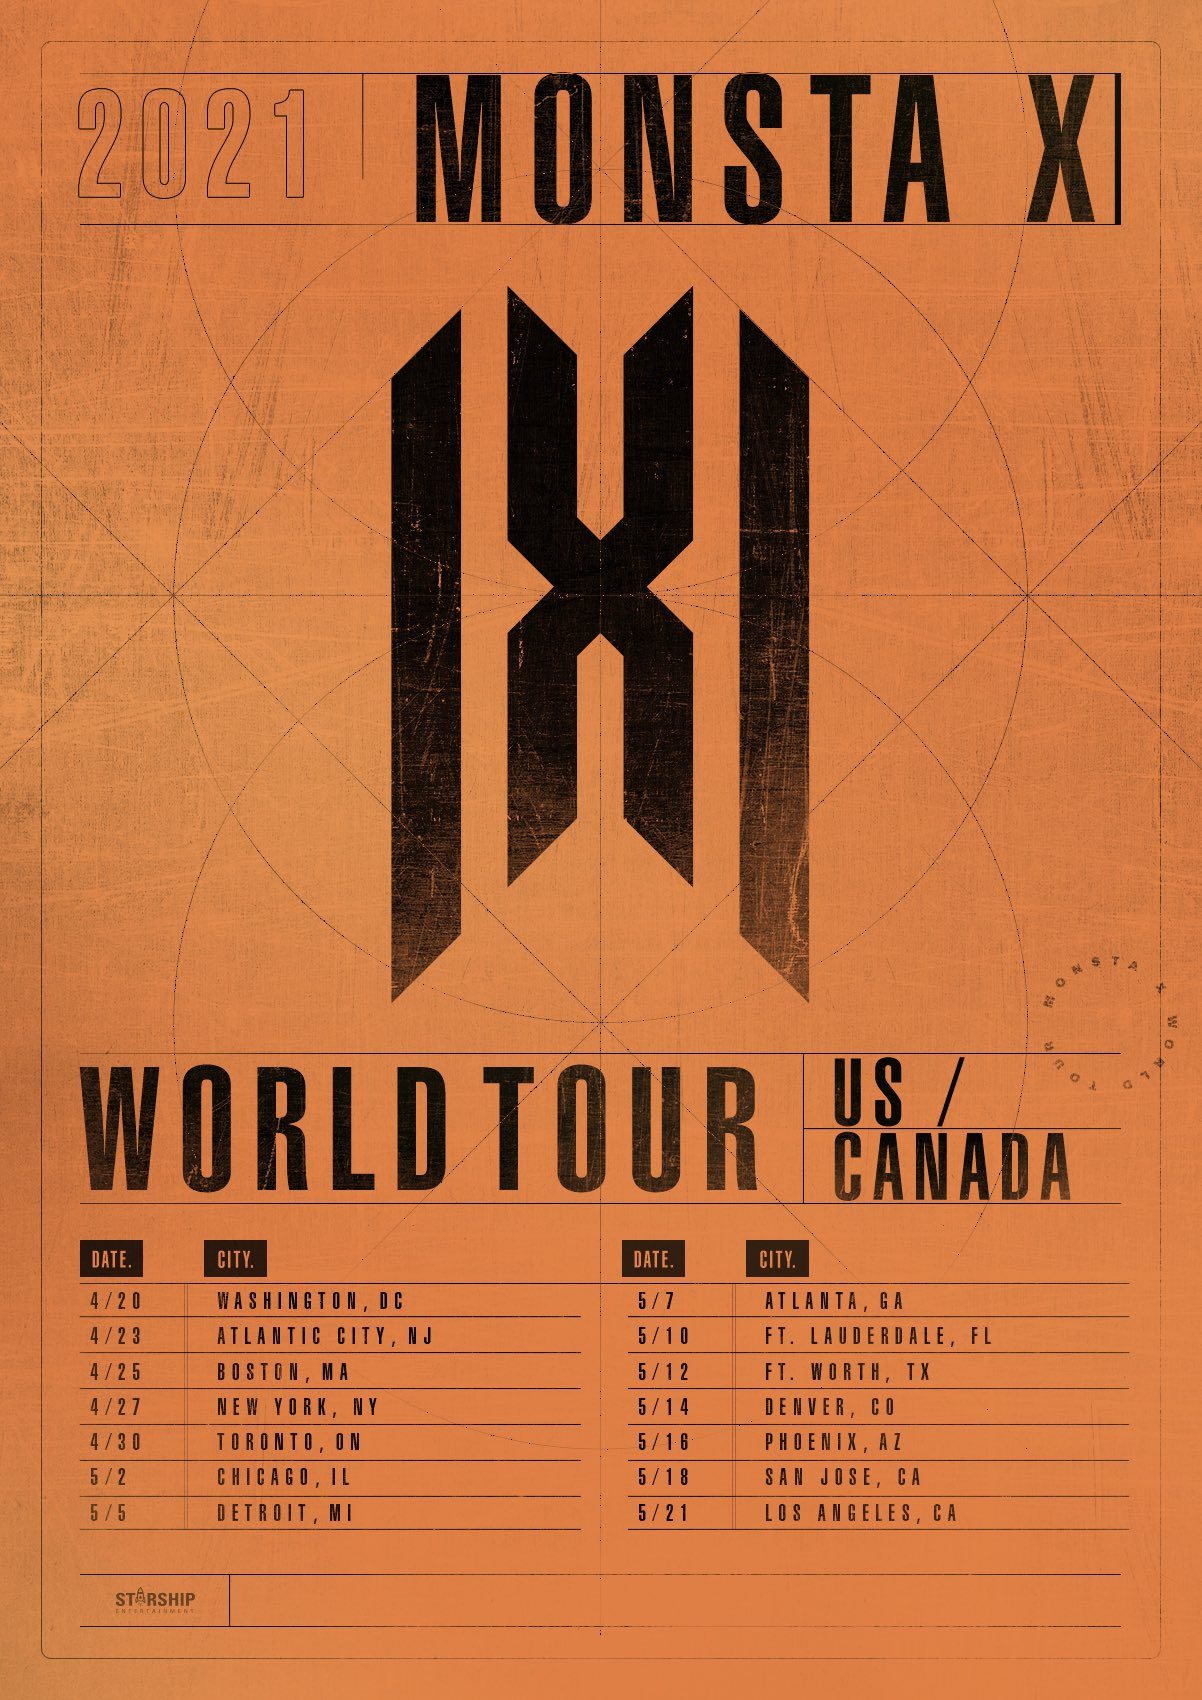 2021 MONSTA X World Tour | Kpop Wiki | Fandom